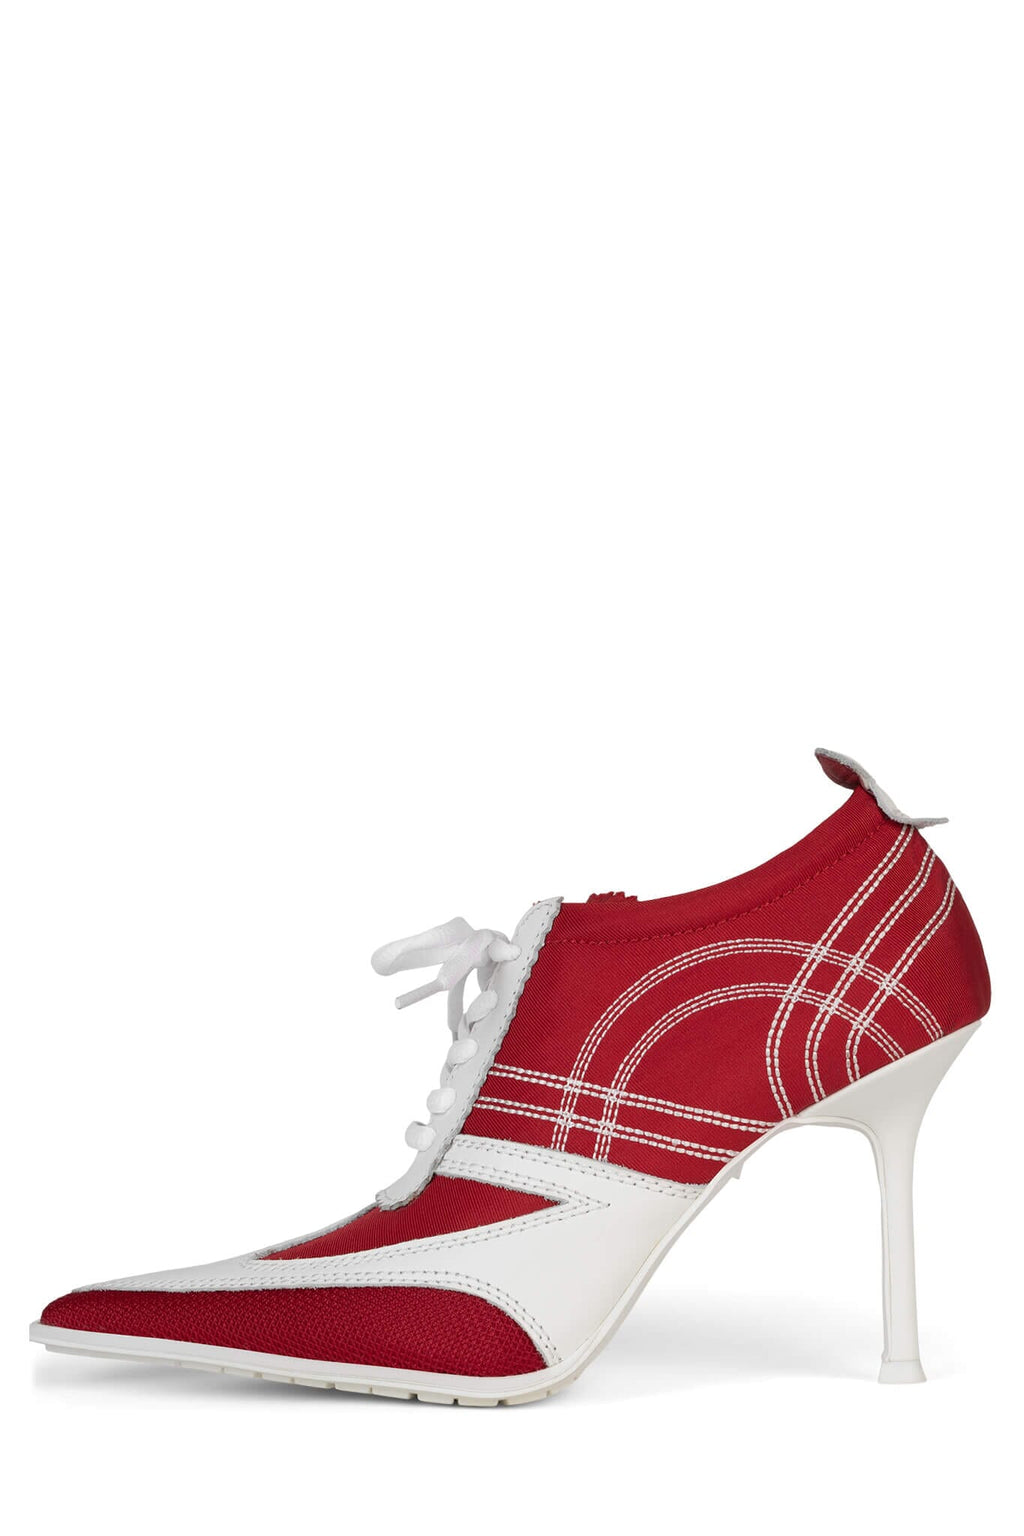 BB Bazar Women Red Heels - Buy BB Bazar Women Red Heels Online at Best  Price - Shop Online for Footwears in India | Flipkart.com